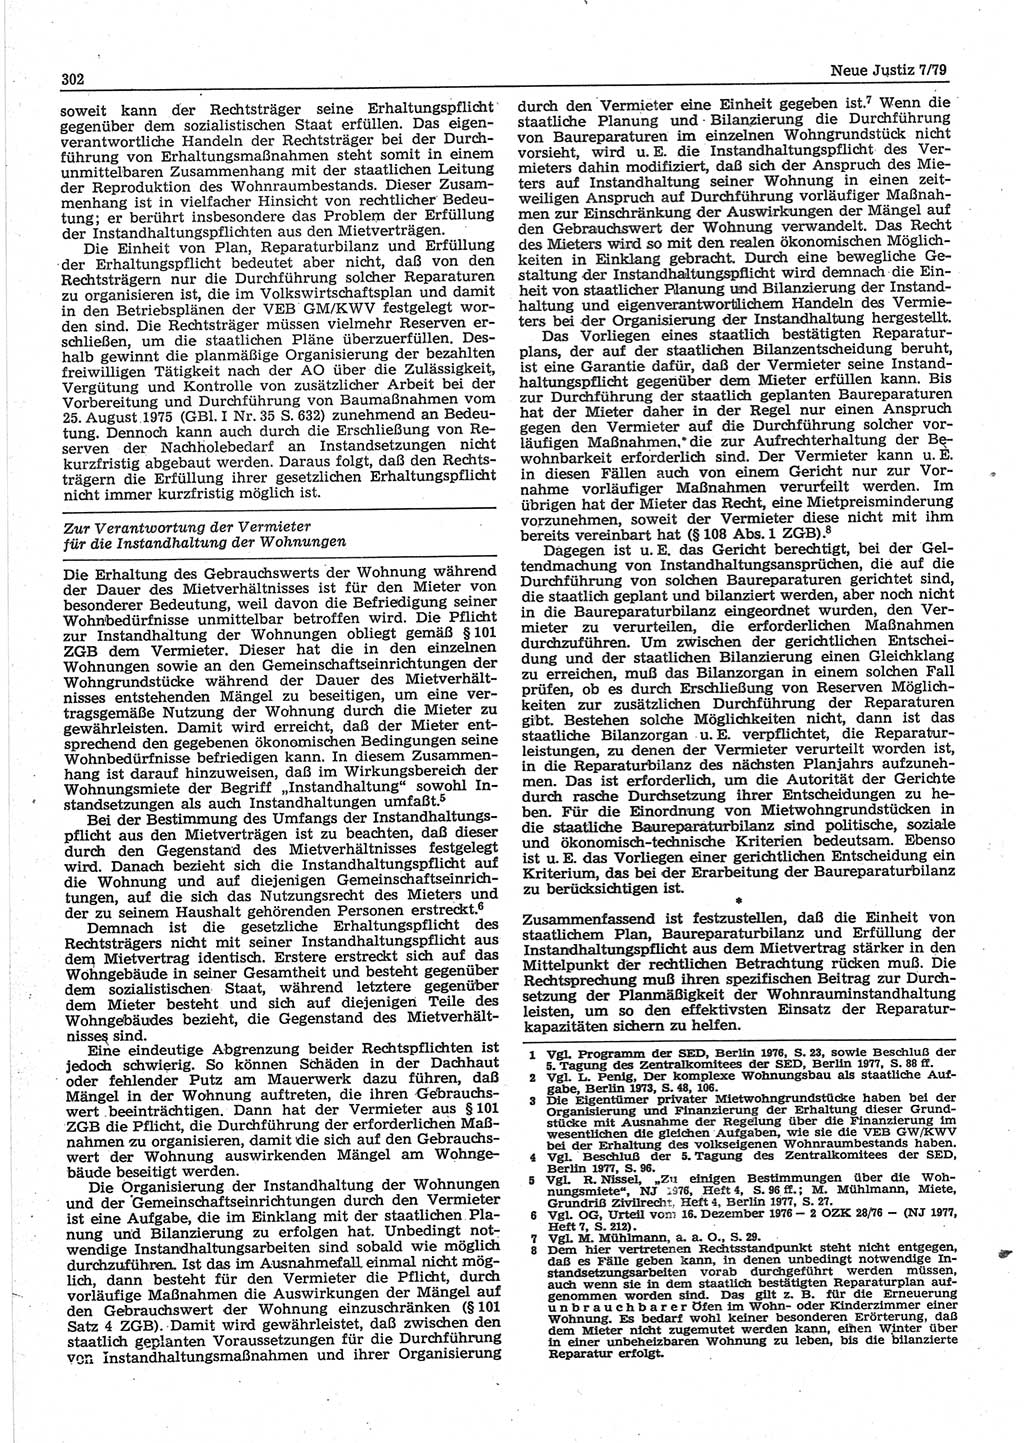 Neue Justiz (NJ), Zeitschrift für sozialistisches Recht und Gesetzlichkeit [Deutsche Demokratische Republik (DDR)], 33. Jahrgang 1979, Seite 302 (NJ DDR 1979, S. 302)